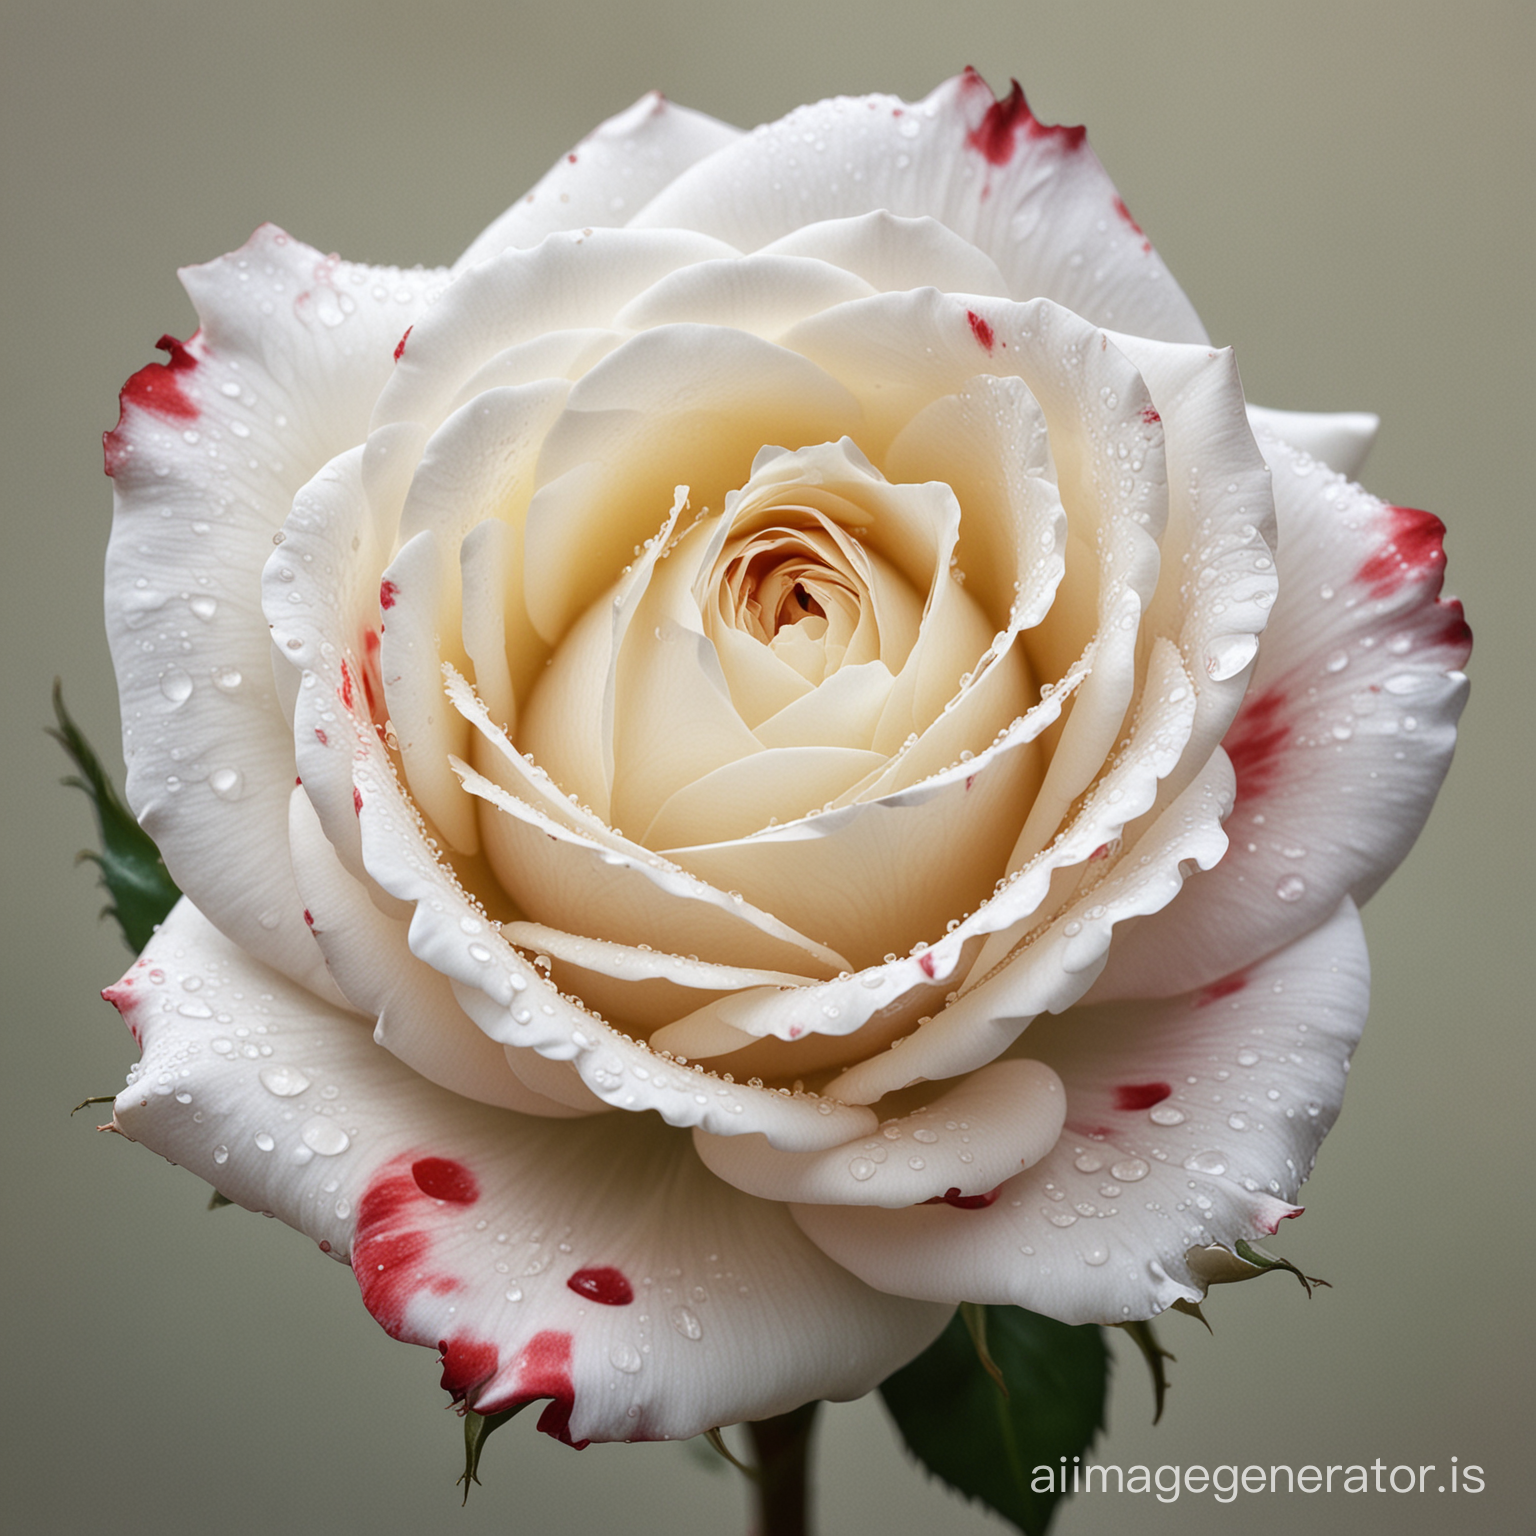 Una hermosa rosa blanca con manchas rojas con un estilo artistico